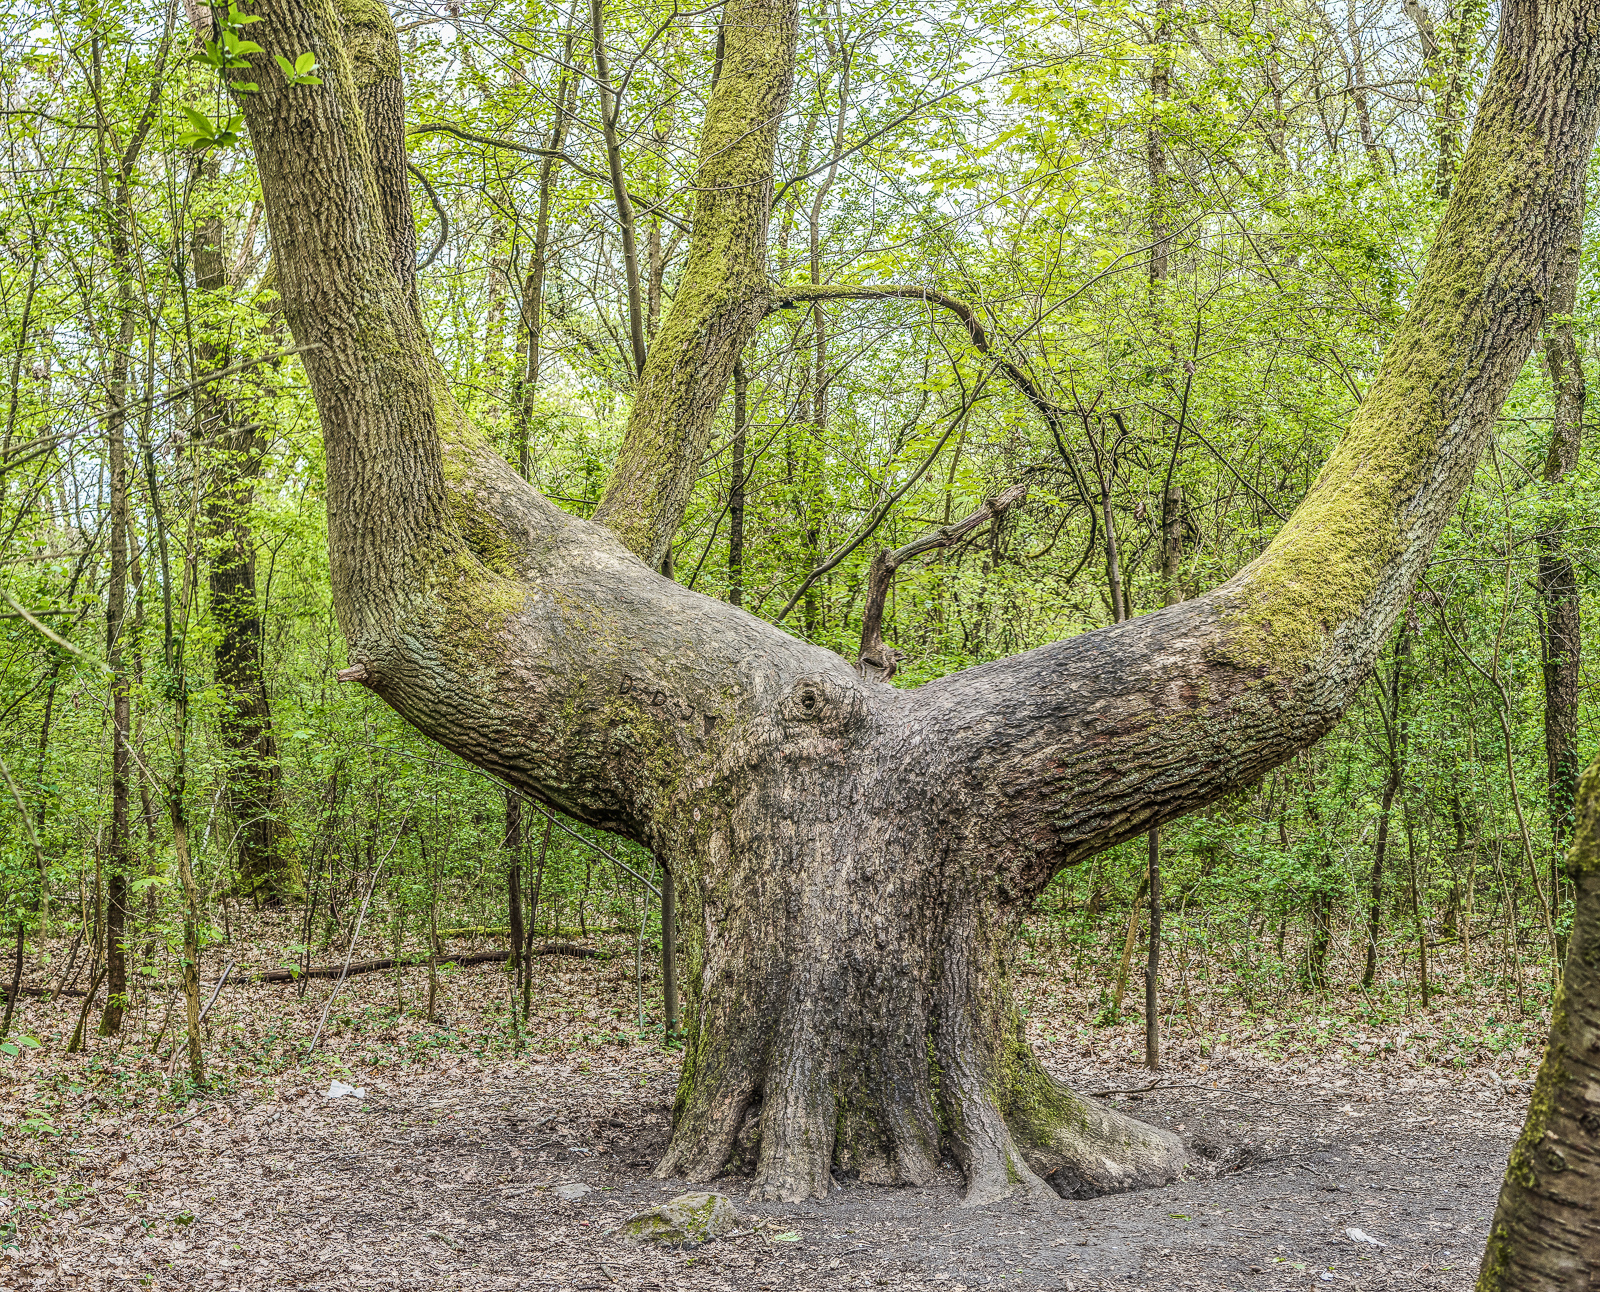 Ein mächtiger BaumStamm gabelt sich dicht über dem Boden, beide HauptÄste wachsen dann nach oben weiter, so dass das Ensemble wie ein Geweih aussieht.